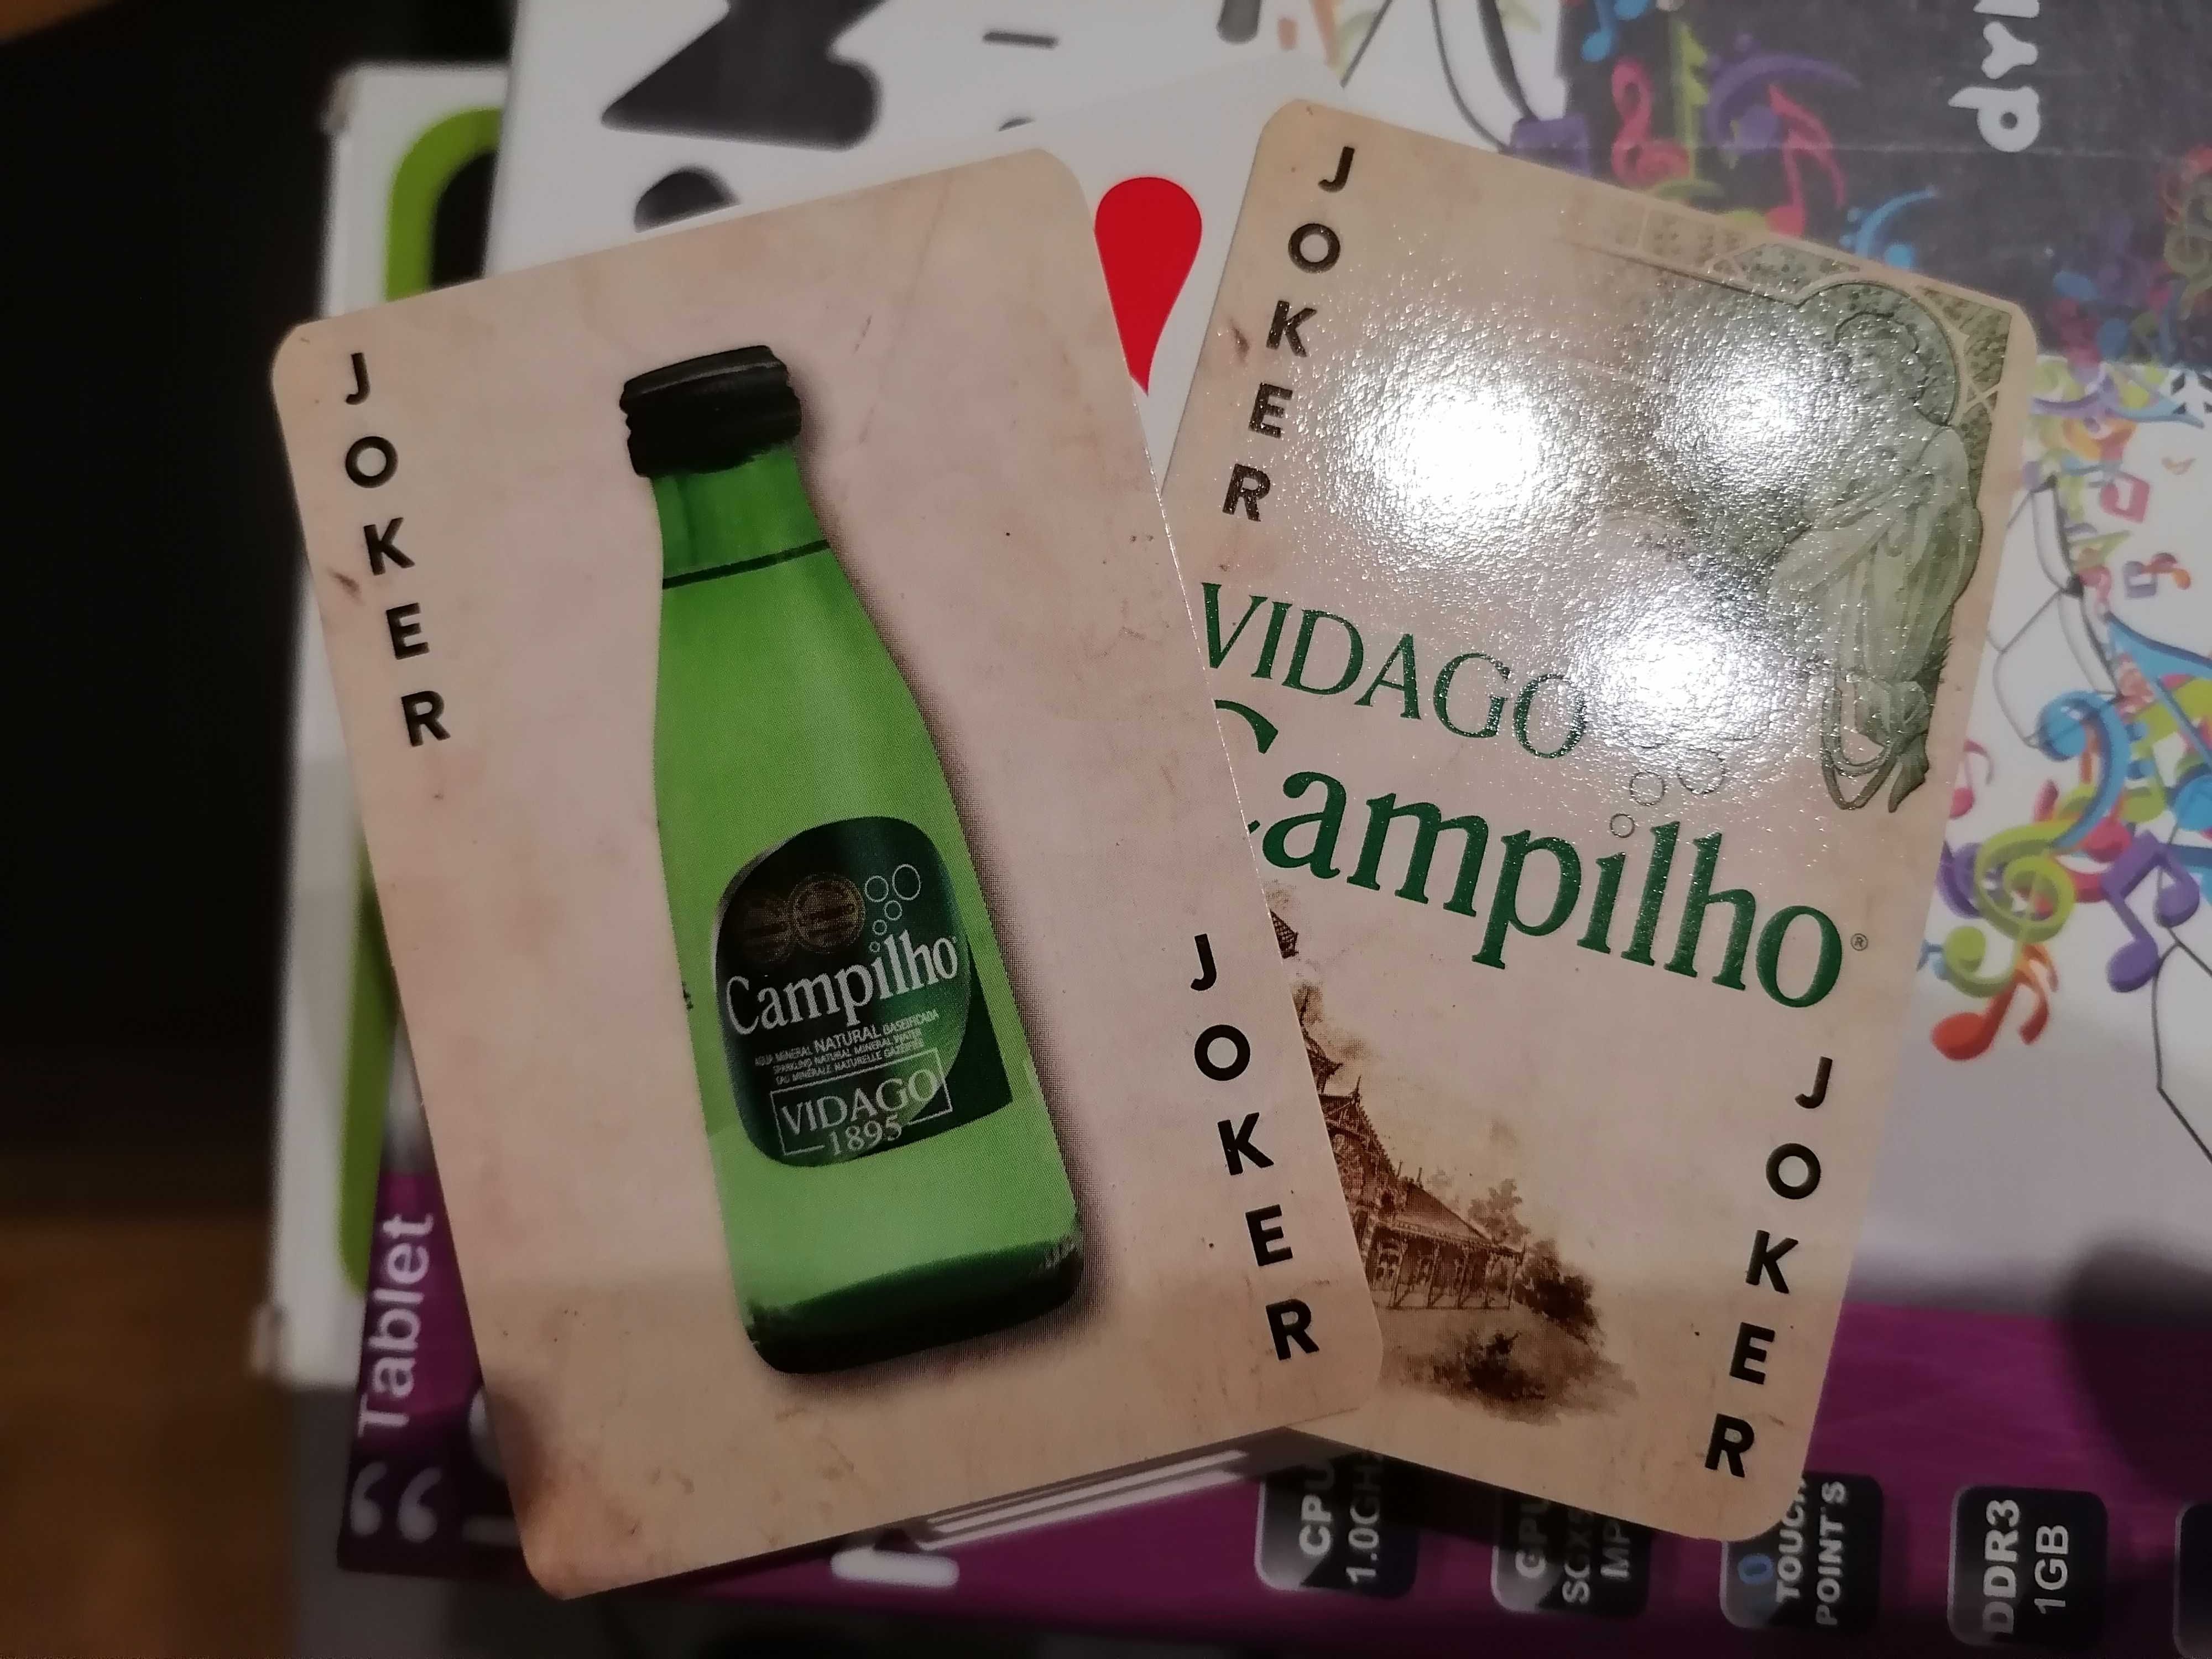 Baralho de cartas Vidago - Campilho